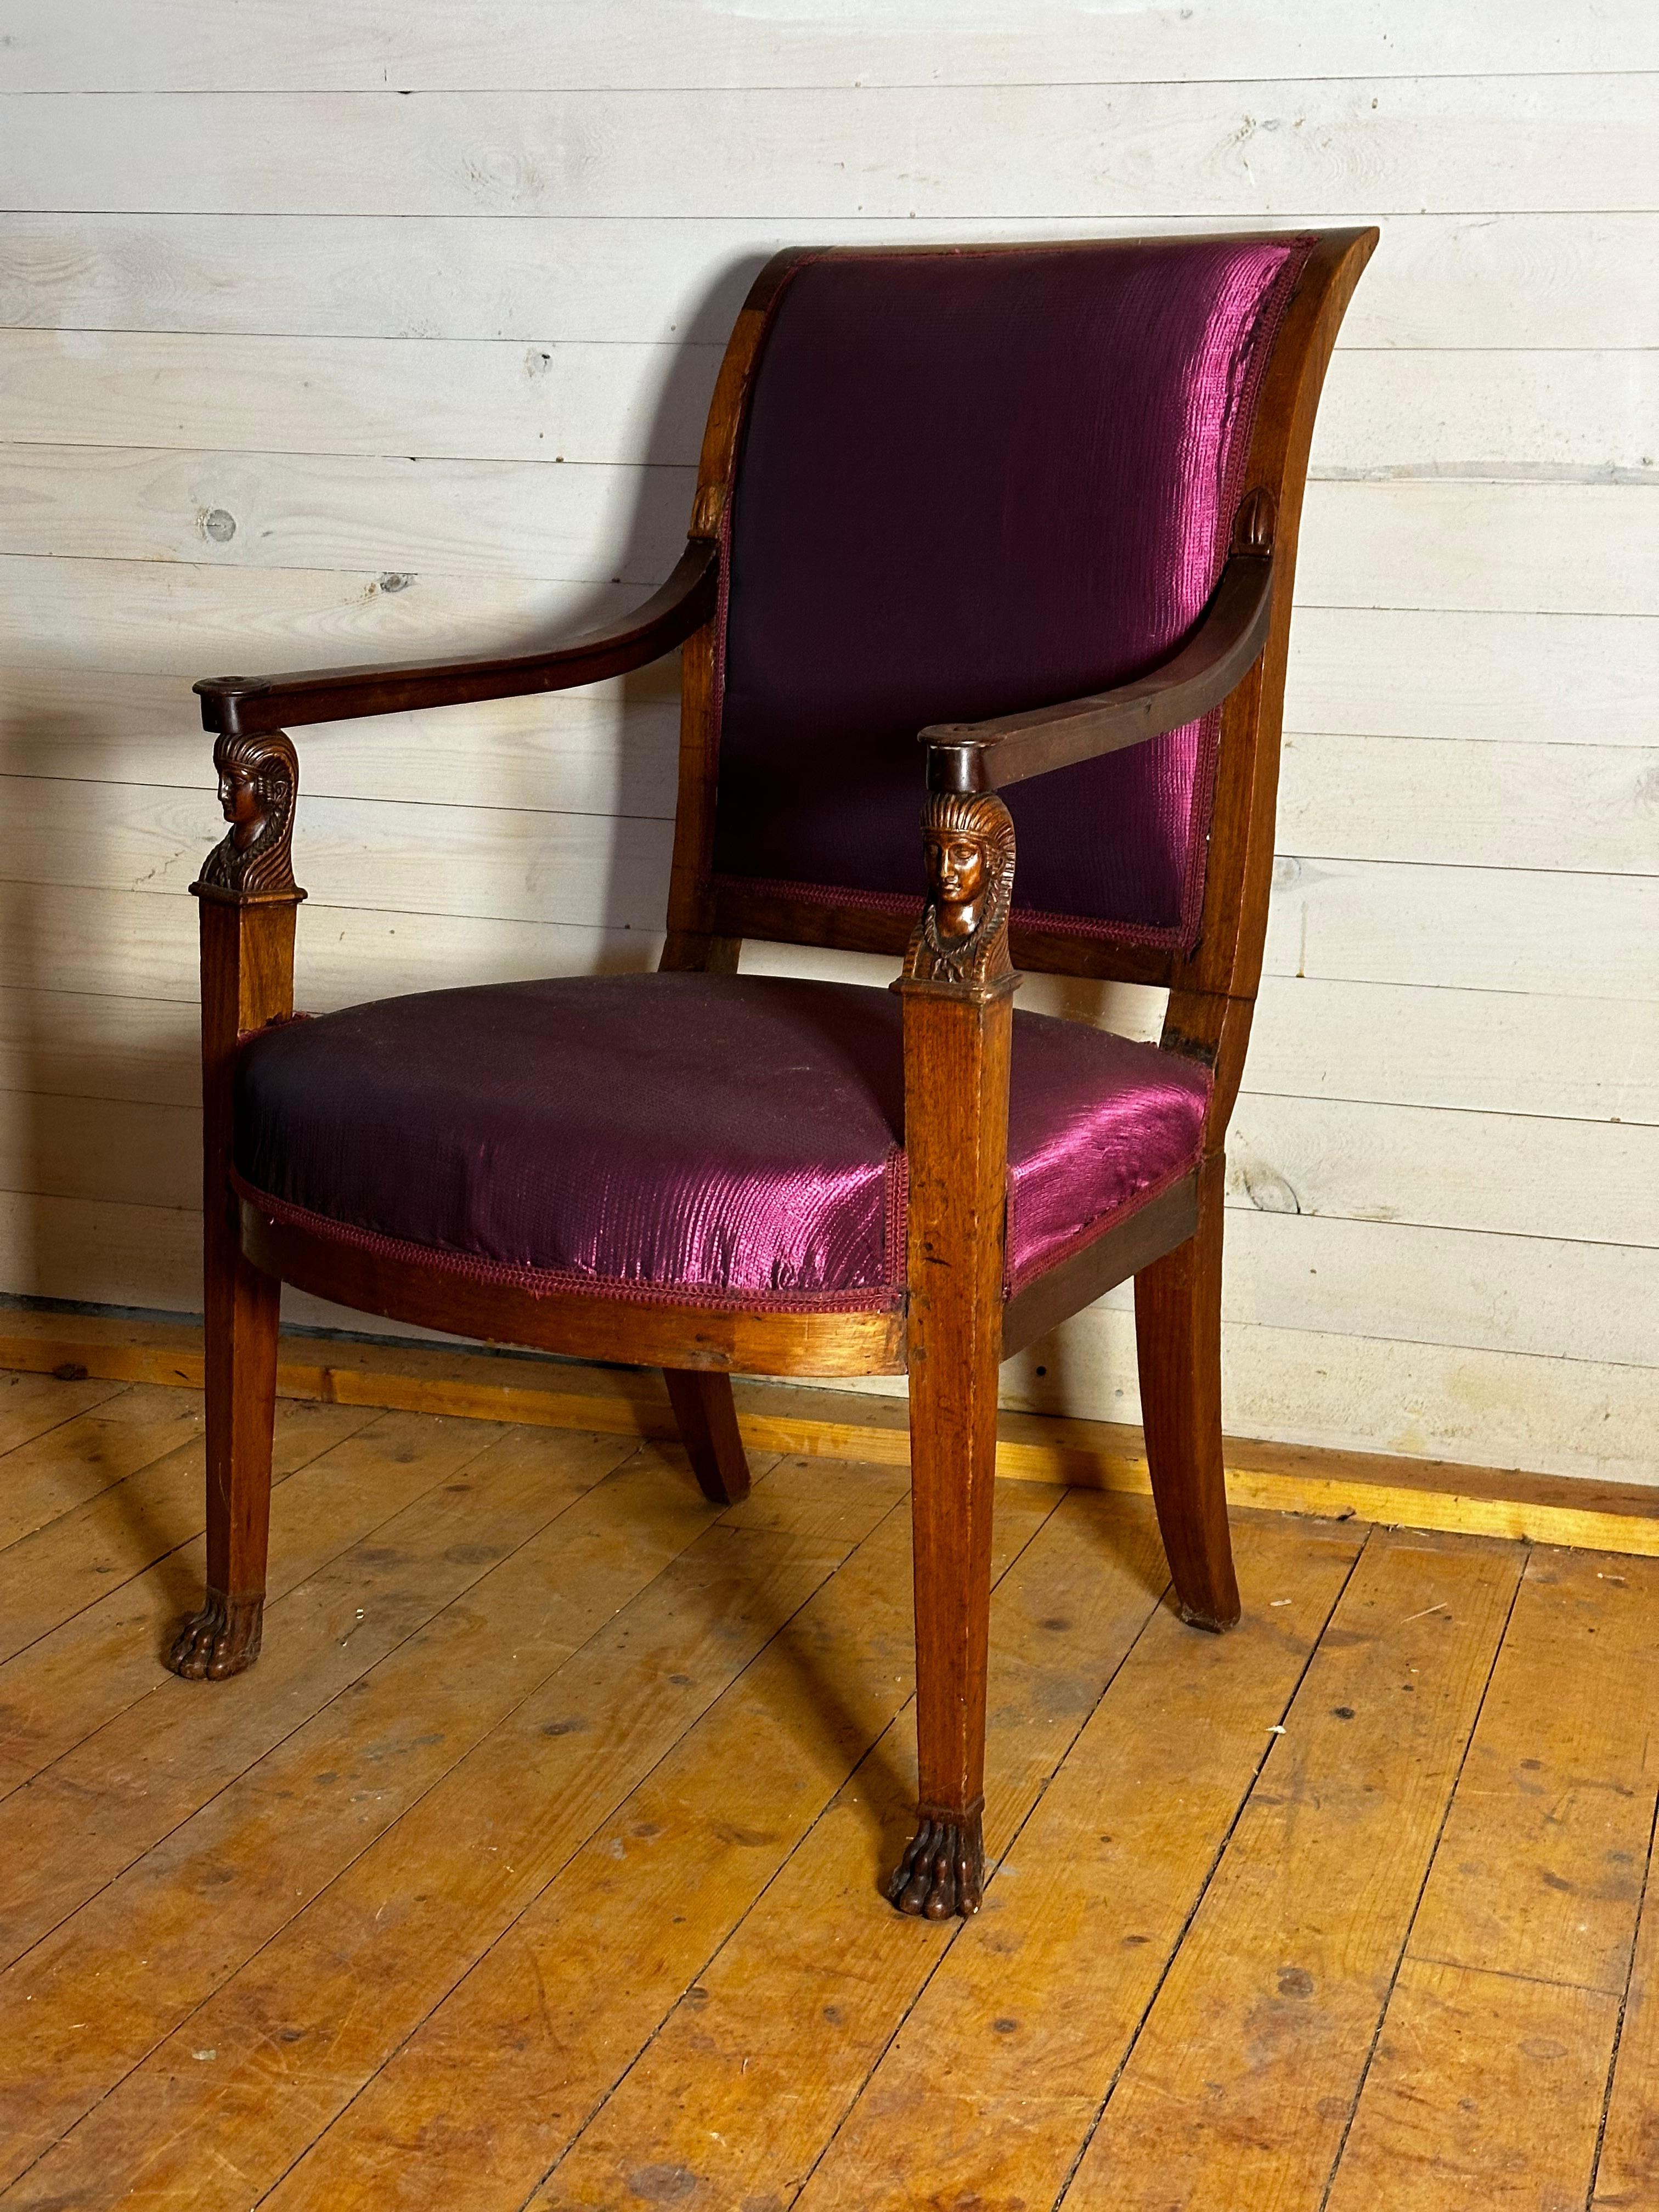 Paire de fauteuils fabriqués en France vers 1810. Les fauteuils ont des têtes égyptiennes sculptées sur l'accoudoir et à l'extrémité du pied, des pattes de lion. Il y a quatre chaises égales, il est possible de les acheter par paires.